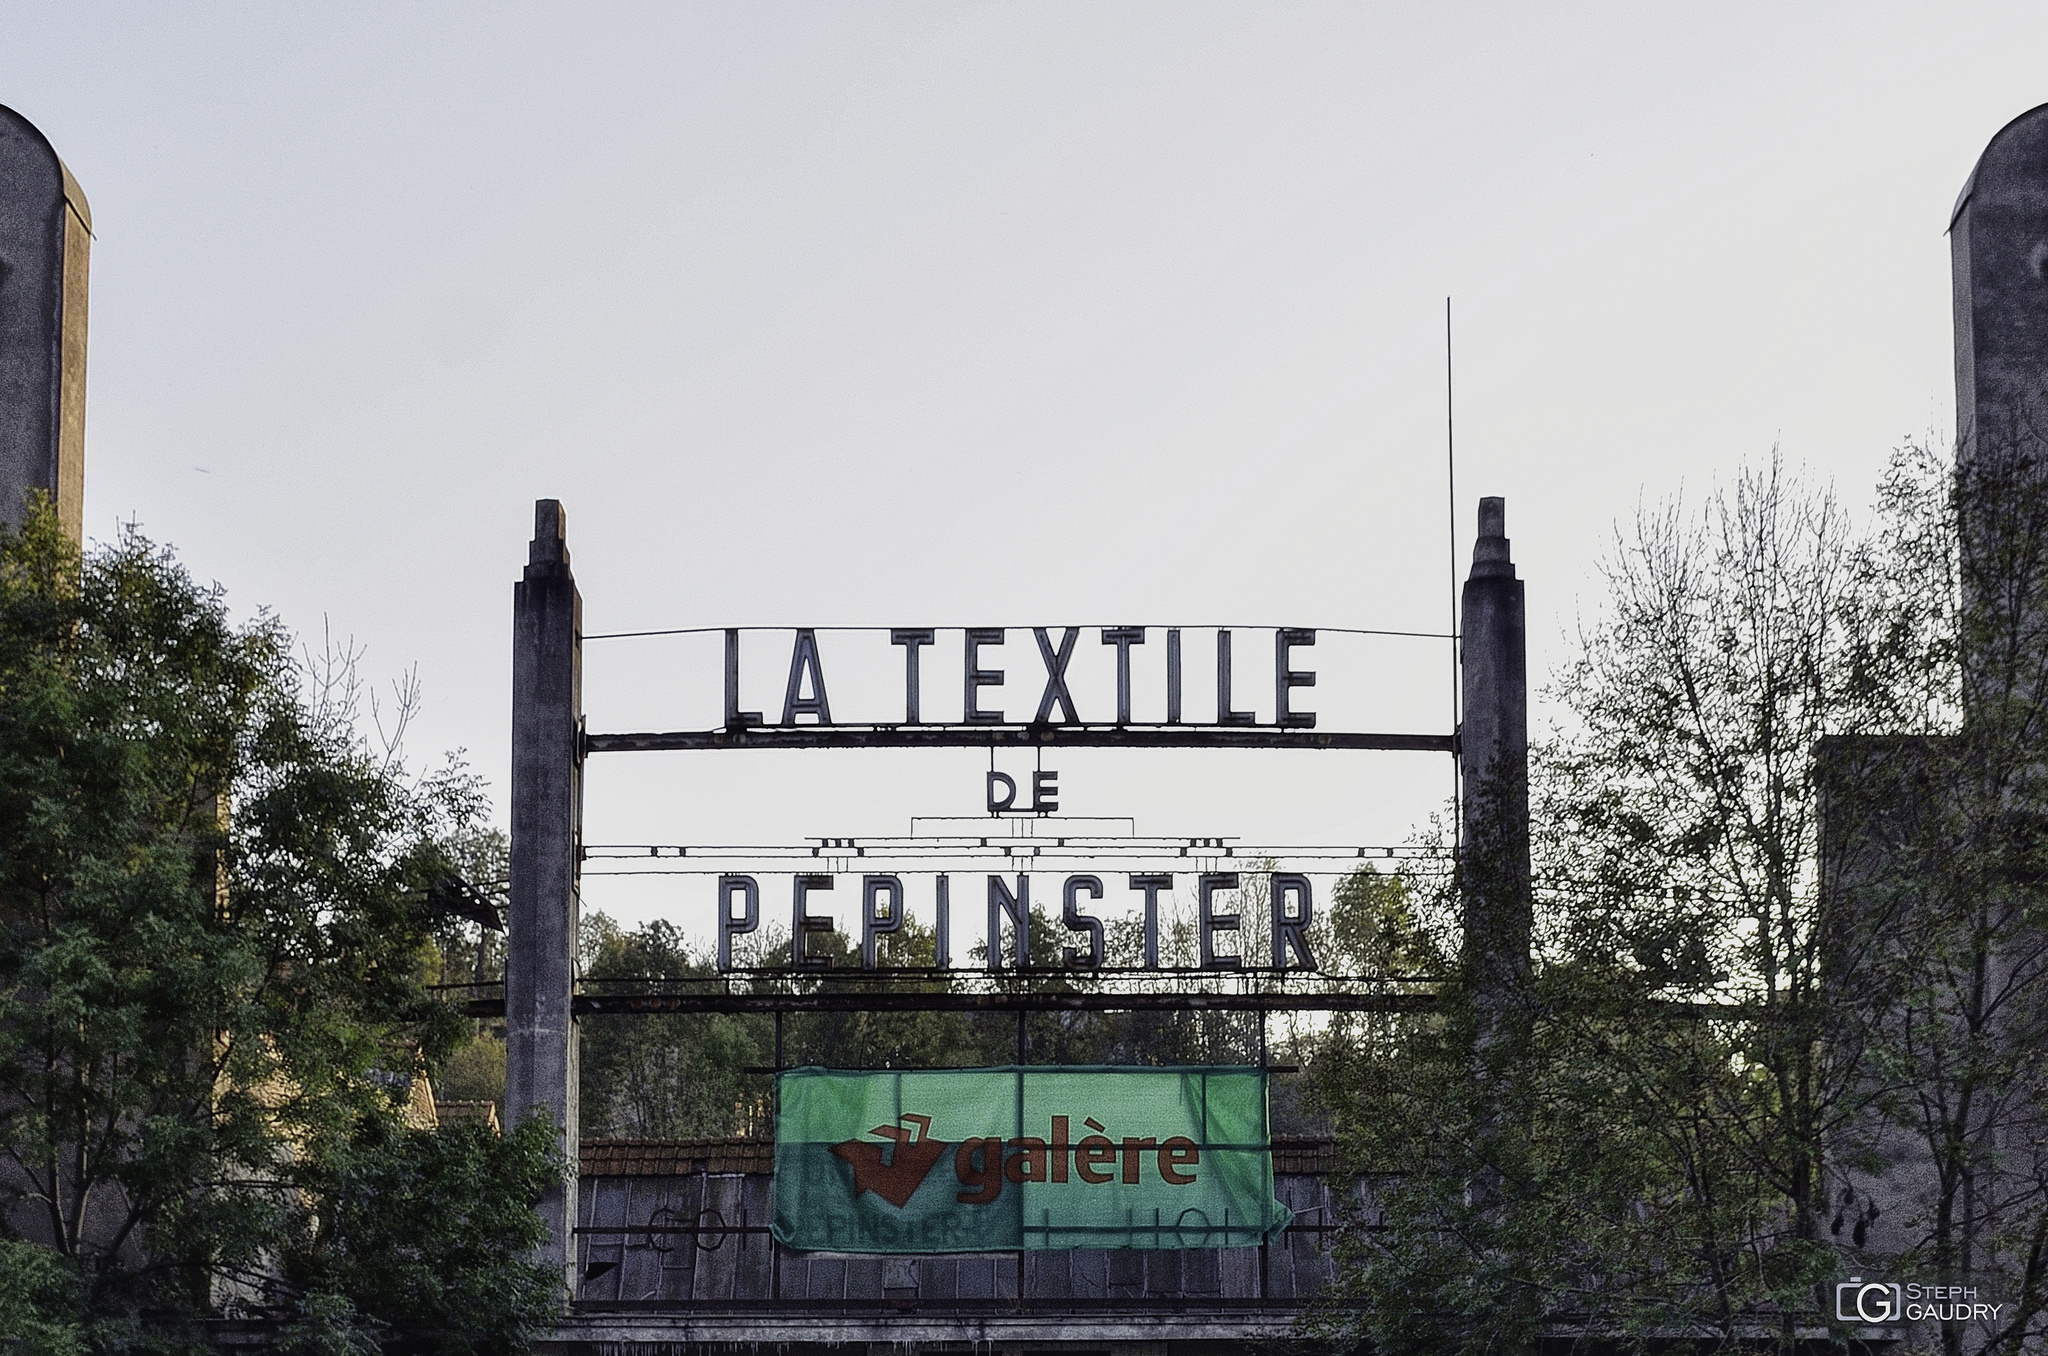 La textile de Pepinster [Klicken Sie hier, um die Diashow zu starten]